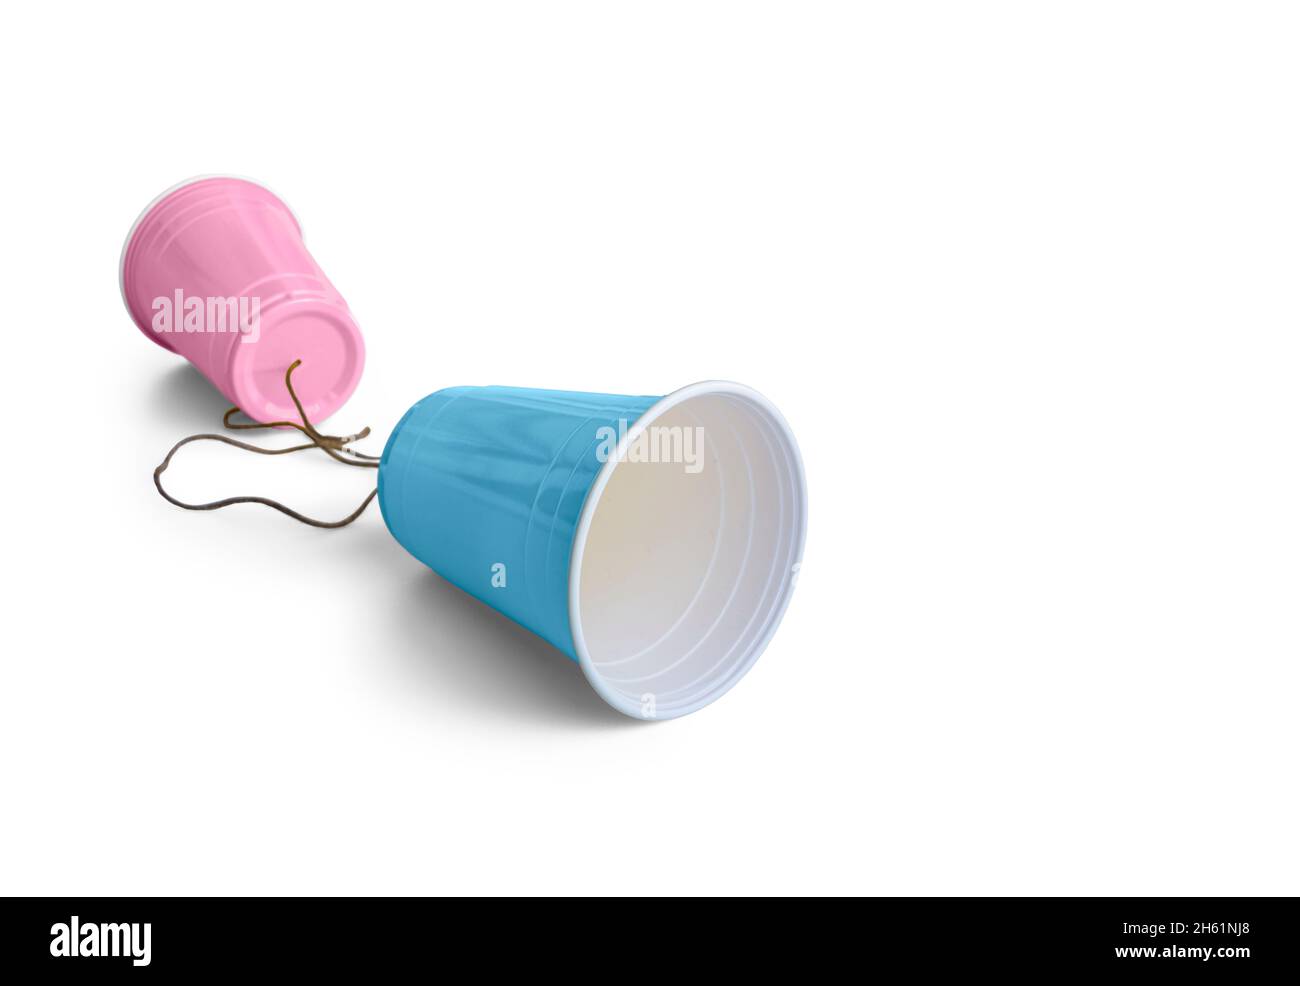 Gobelet en plastique rose et bleu avec ficelle Photo Stock - Alamy